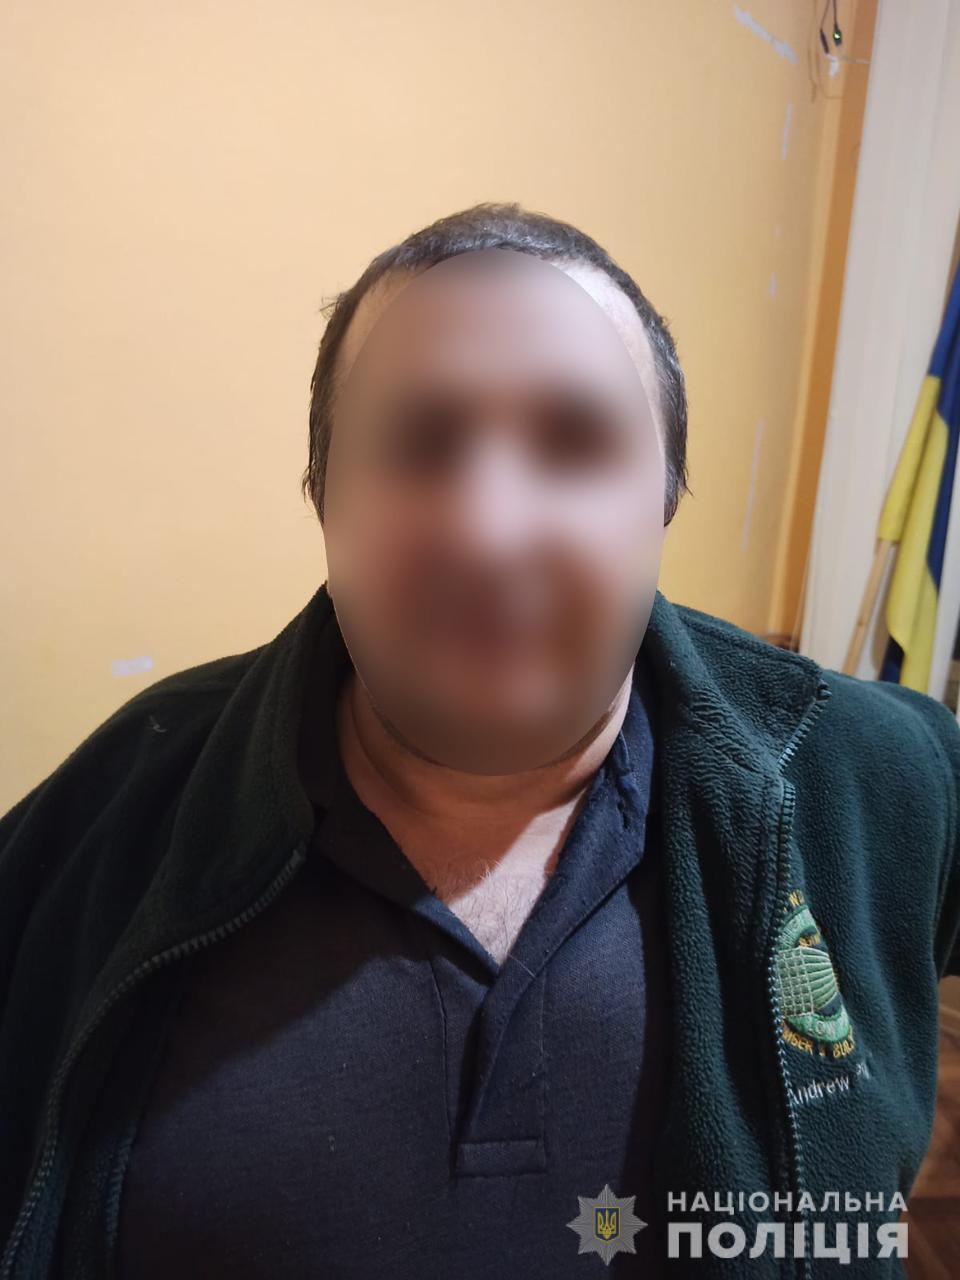 В Ужгородской области задержали злоумышленника по подозрению в покушении на убийство его друга.